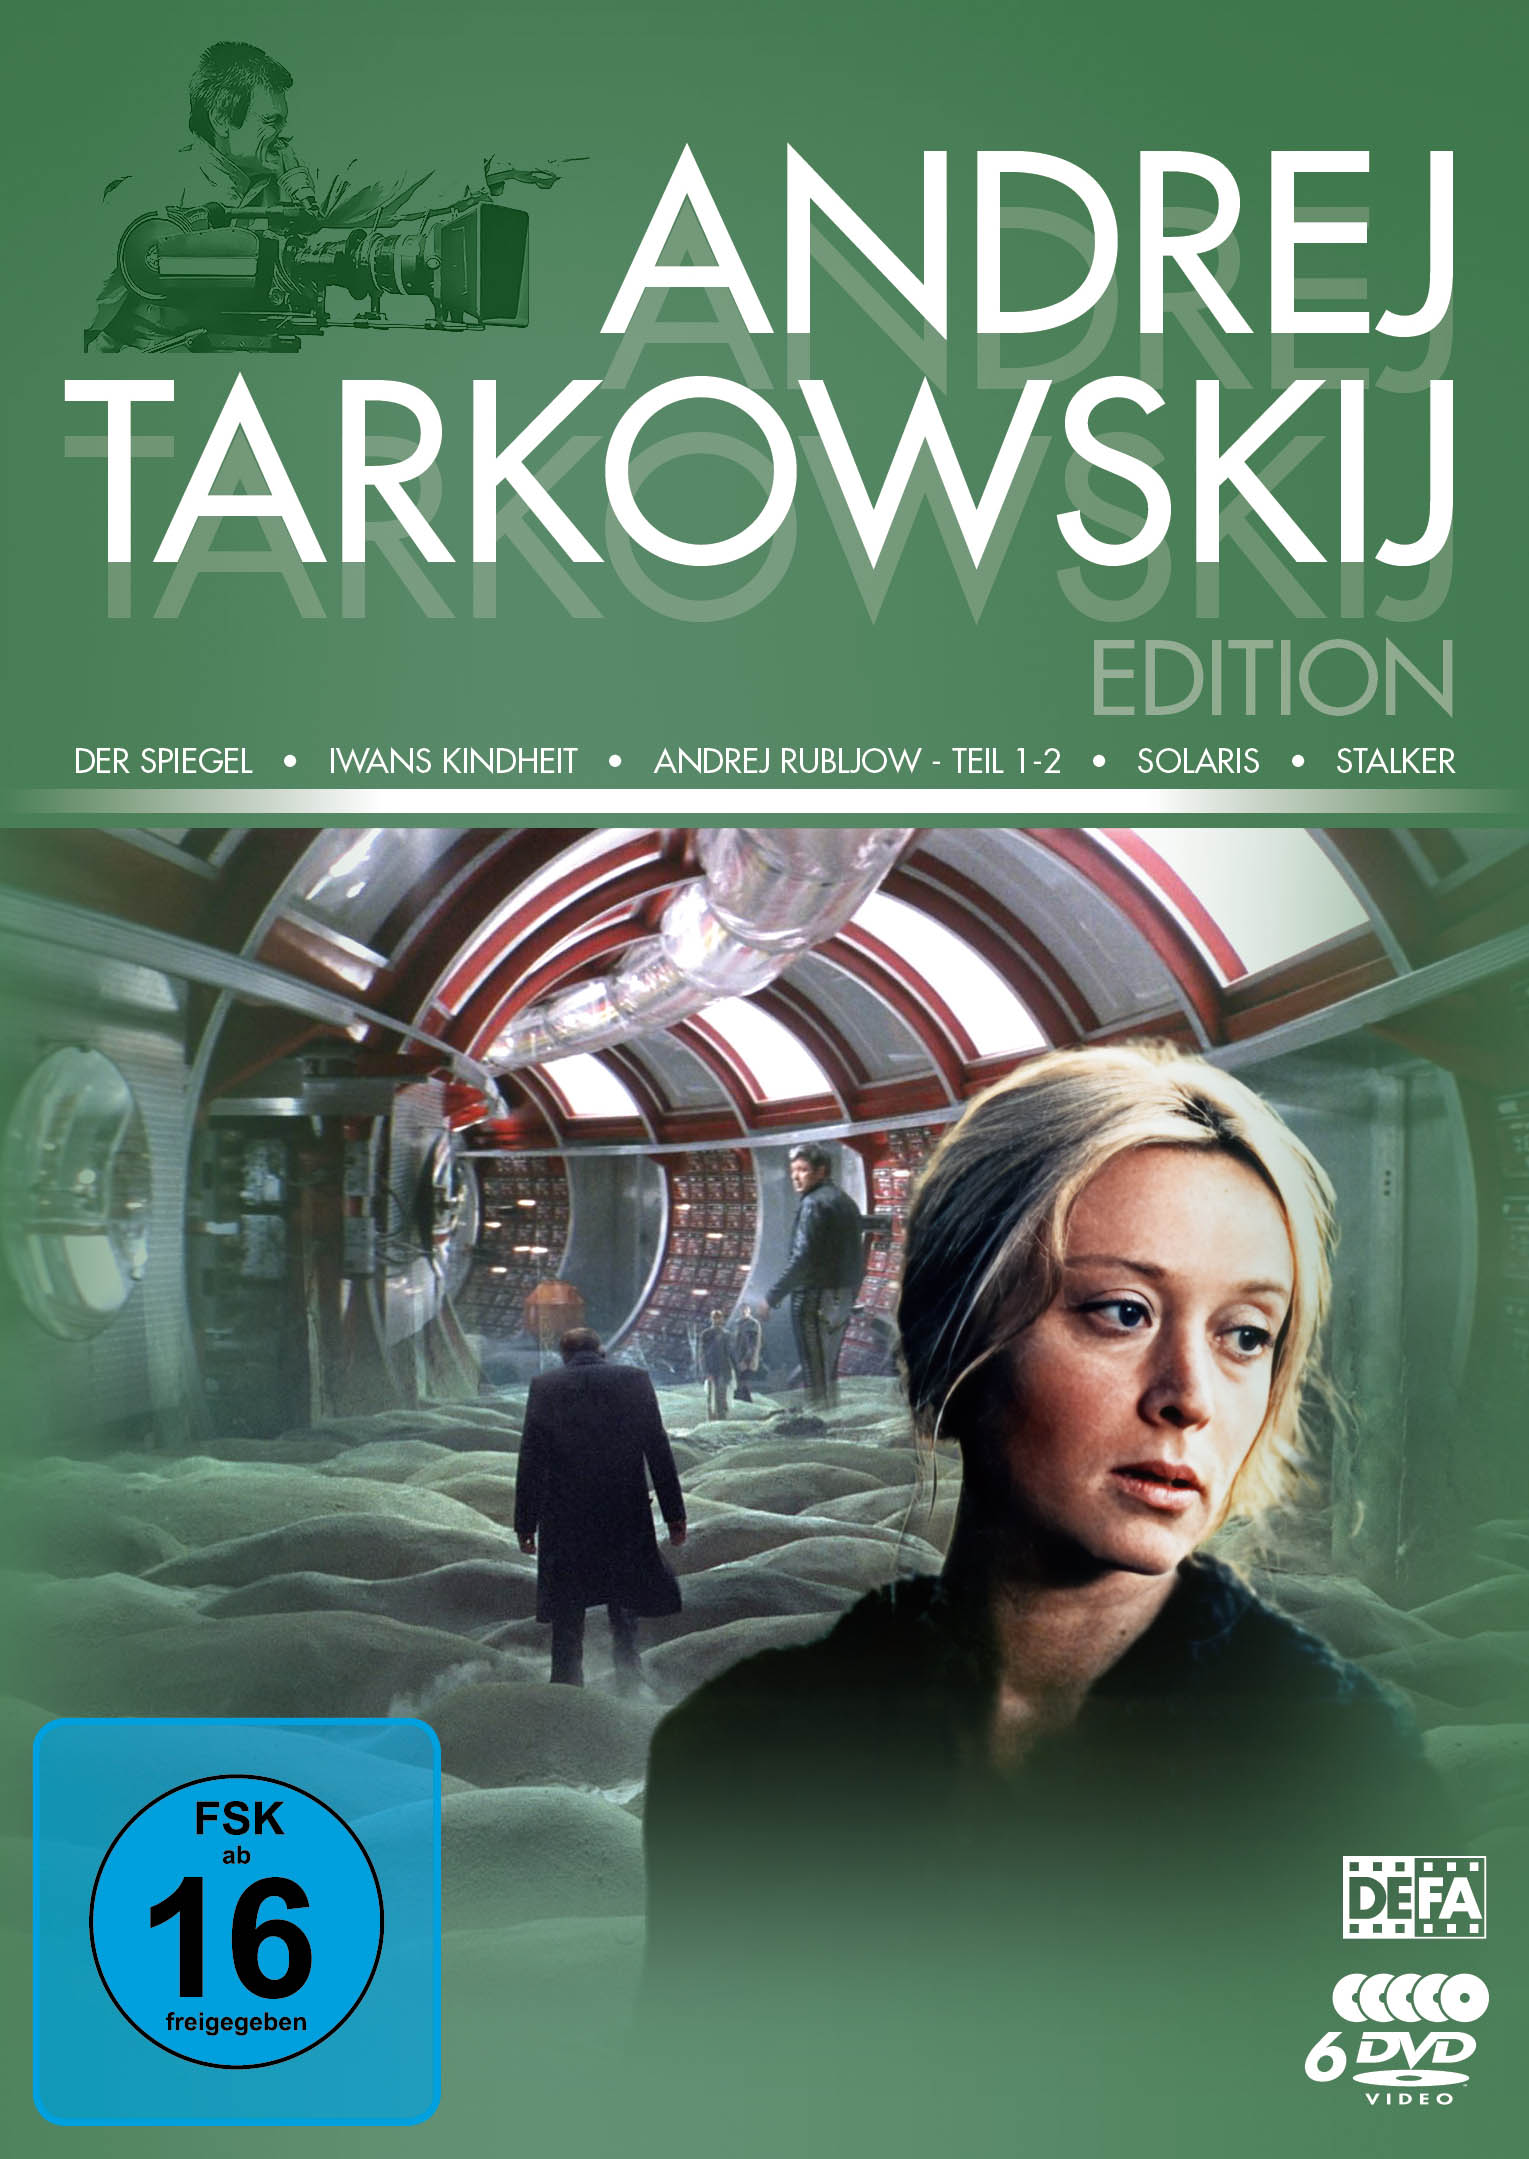 Andrej Tarkowskij Edition (DEFA Filmjuwelen)